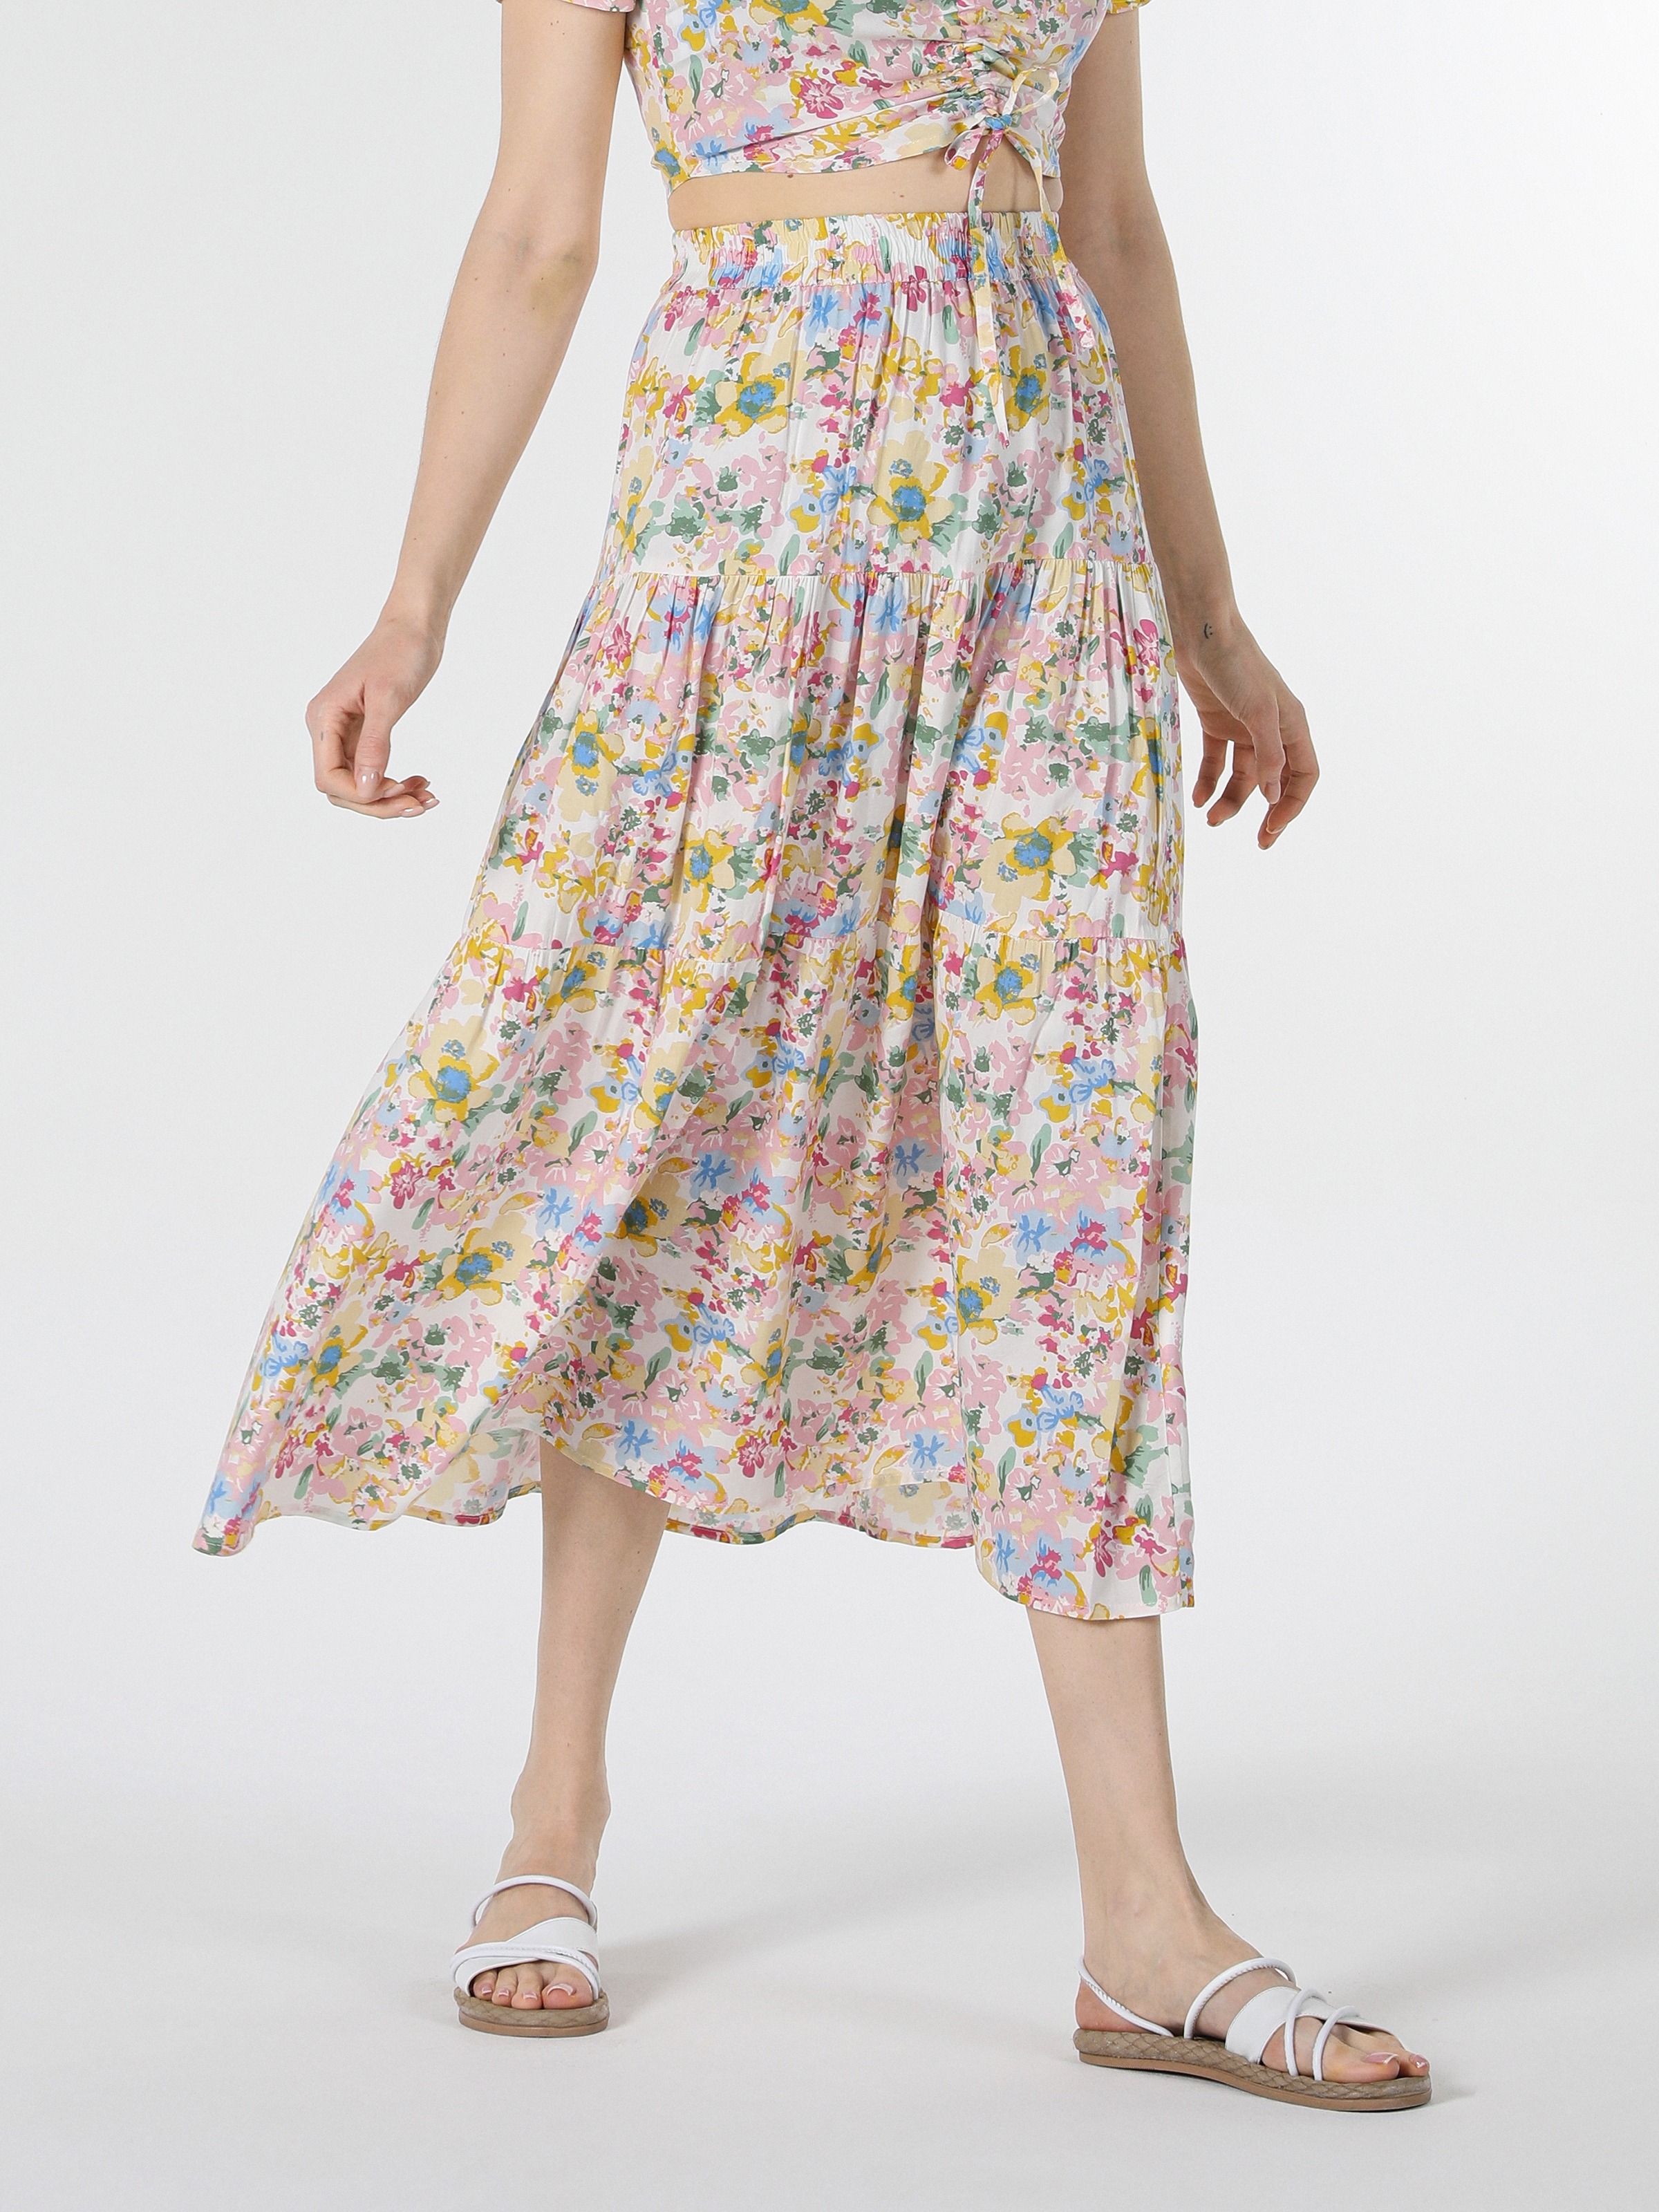 Afficher les détails de Jupe Femme Multicolore Imprimé Floral Maxi Longueur